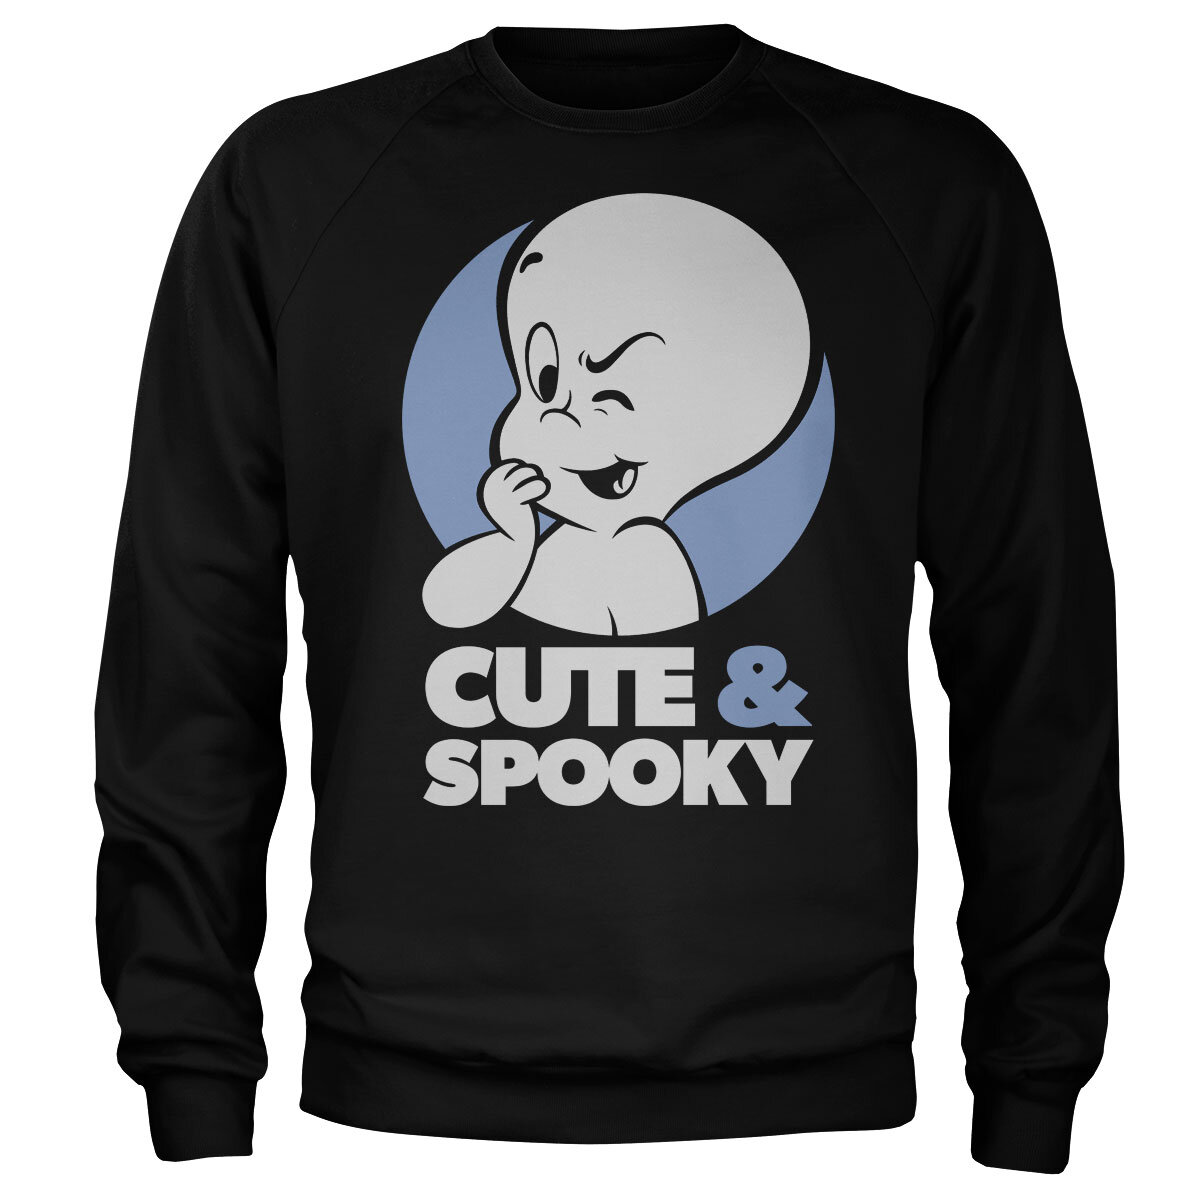 Cute & Spooky Sweatshirt